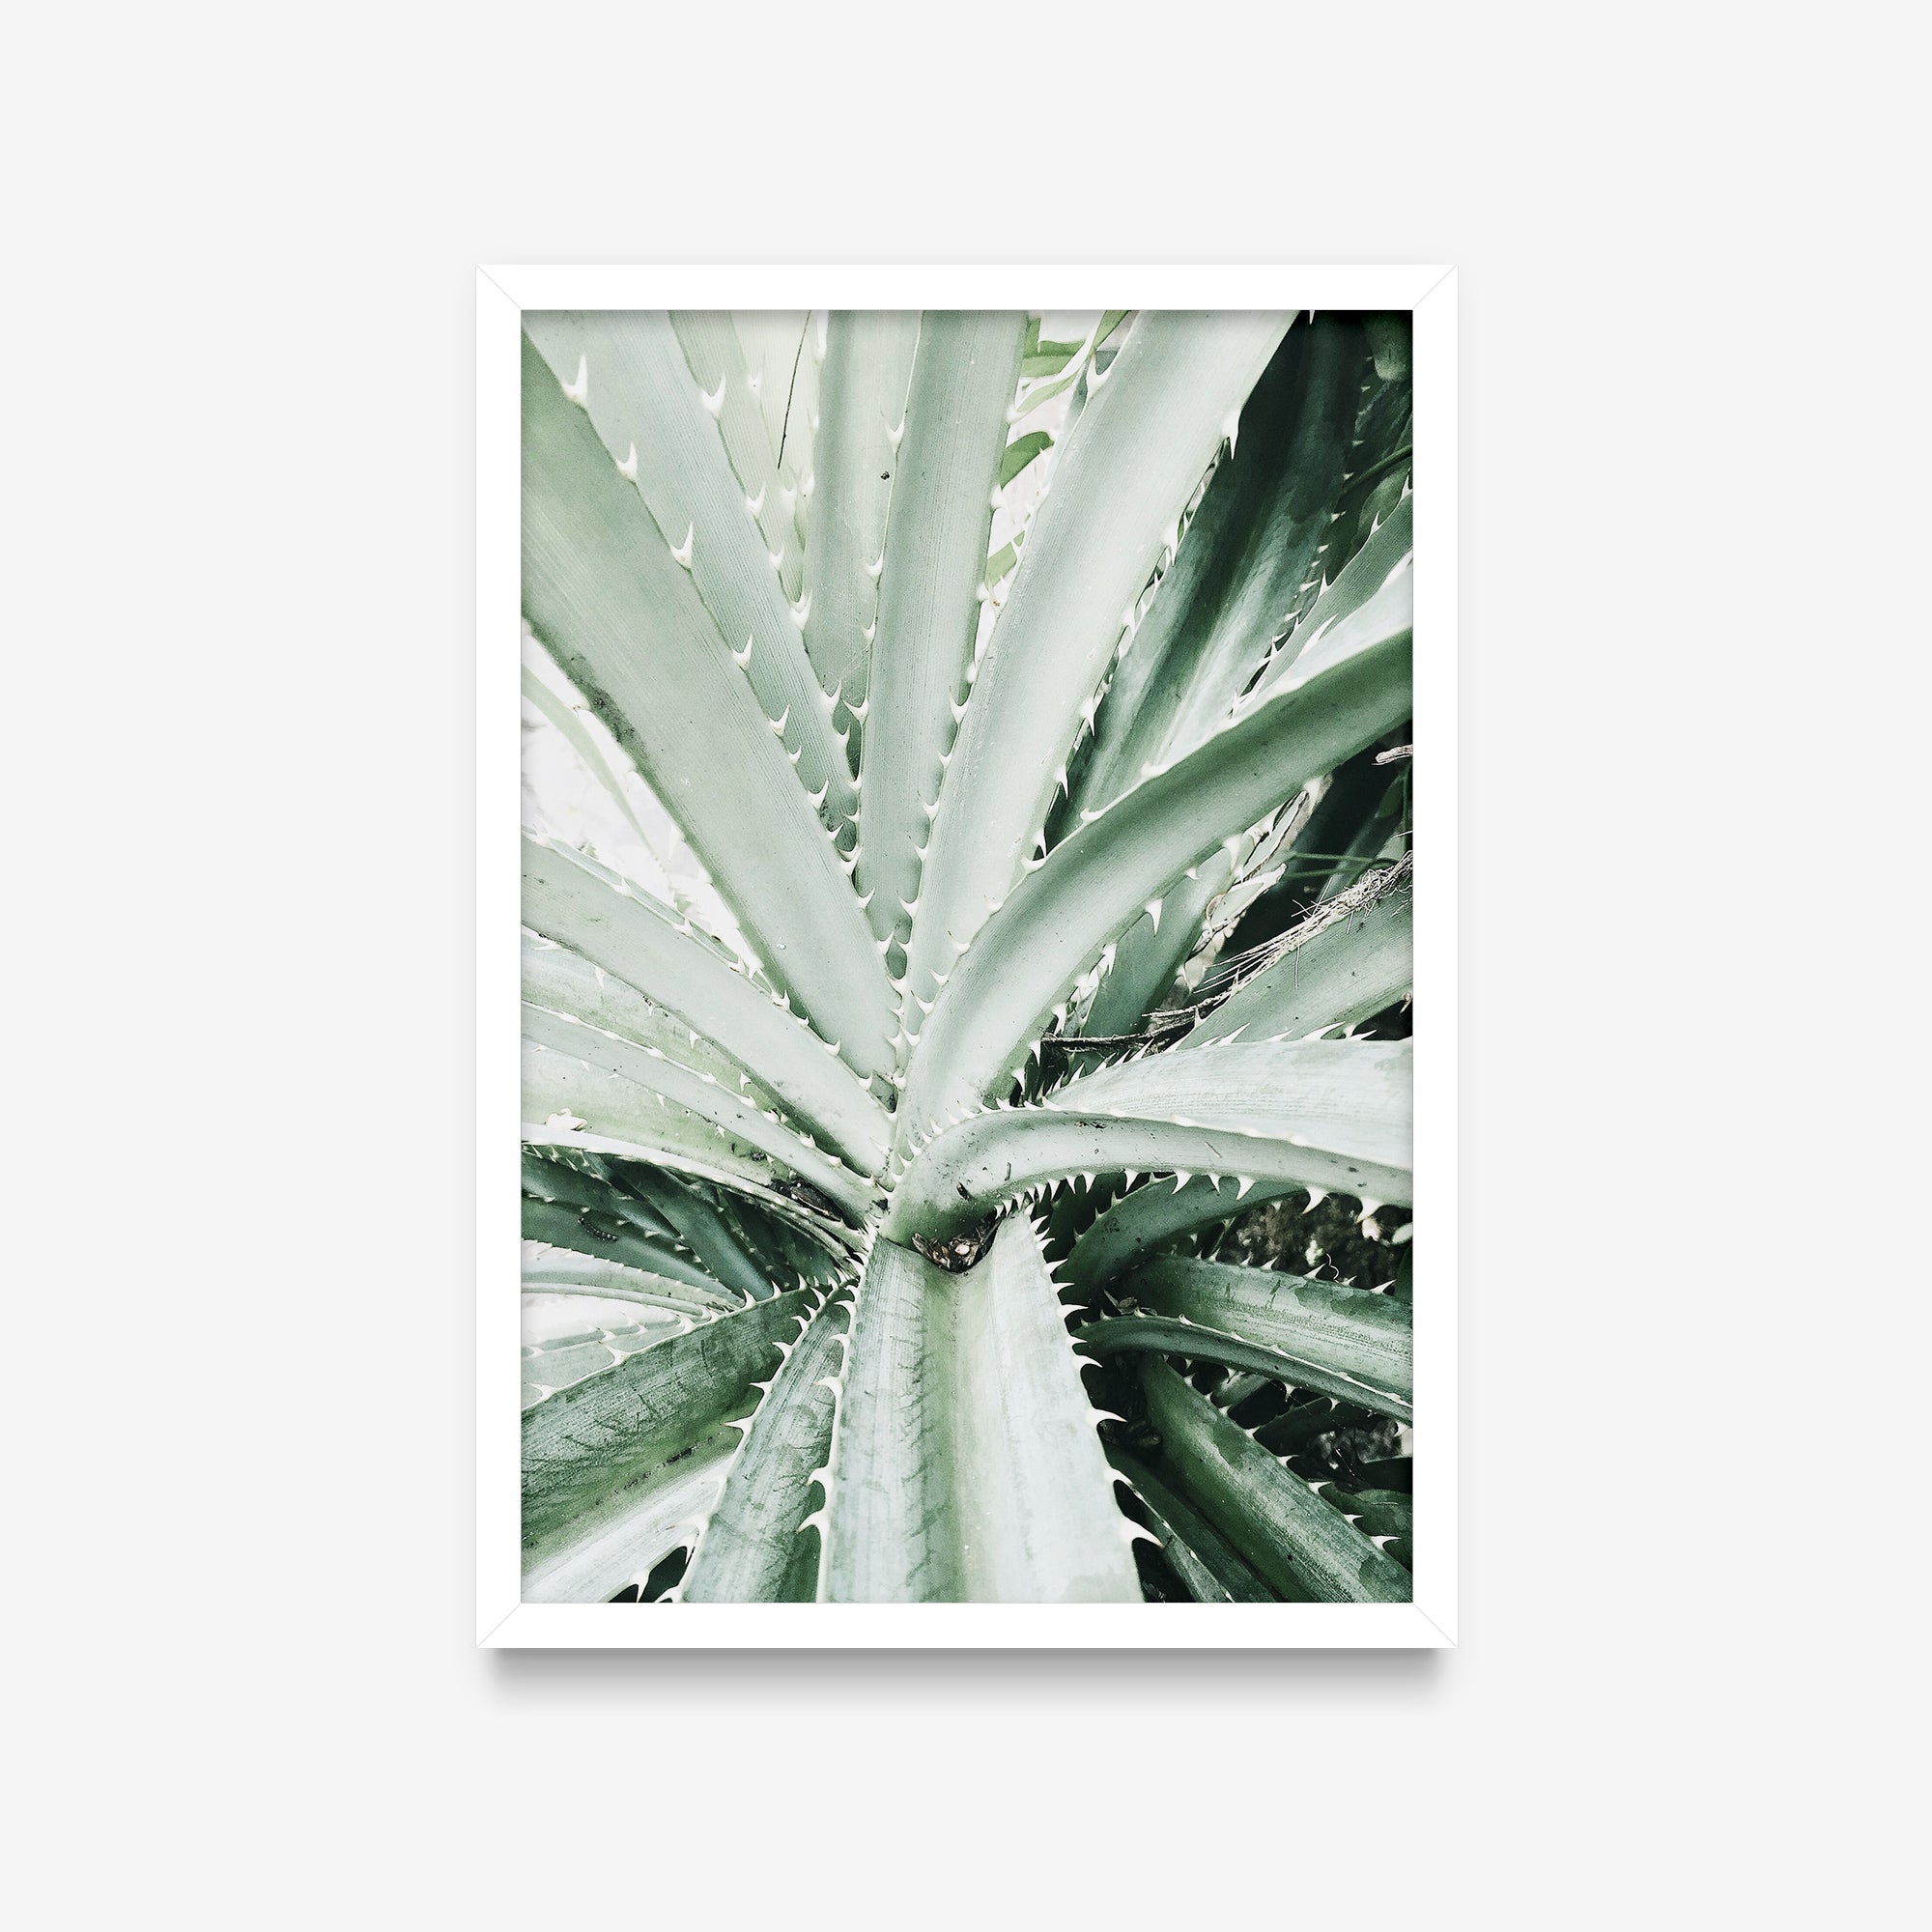 Plantas - Aloe detalhe